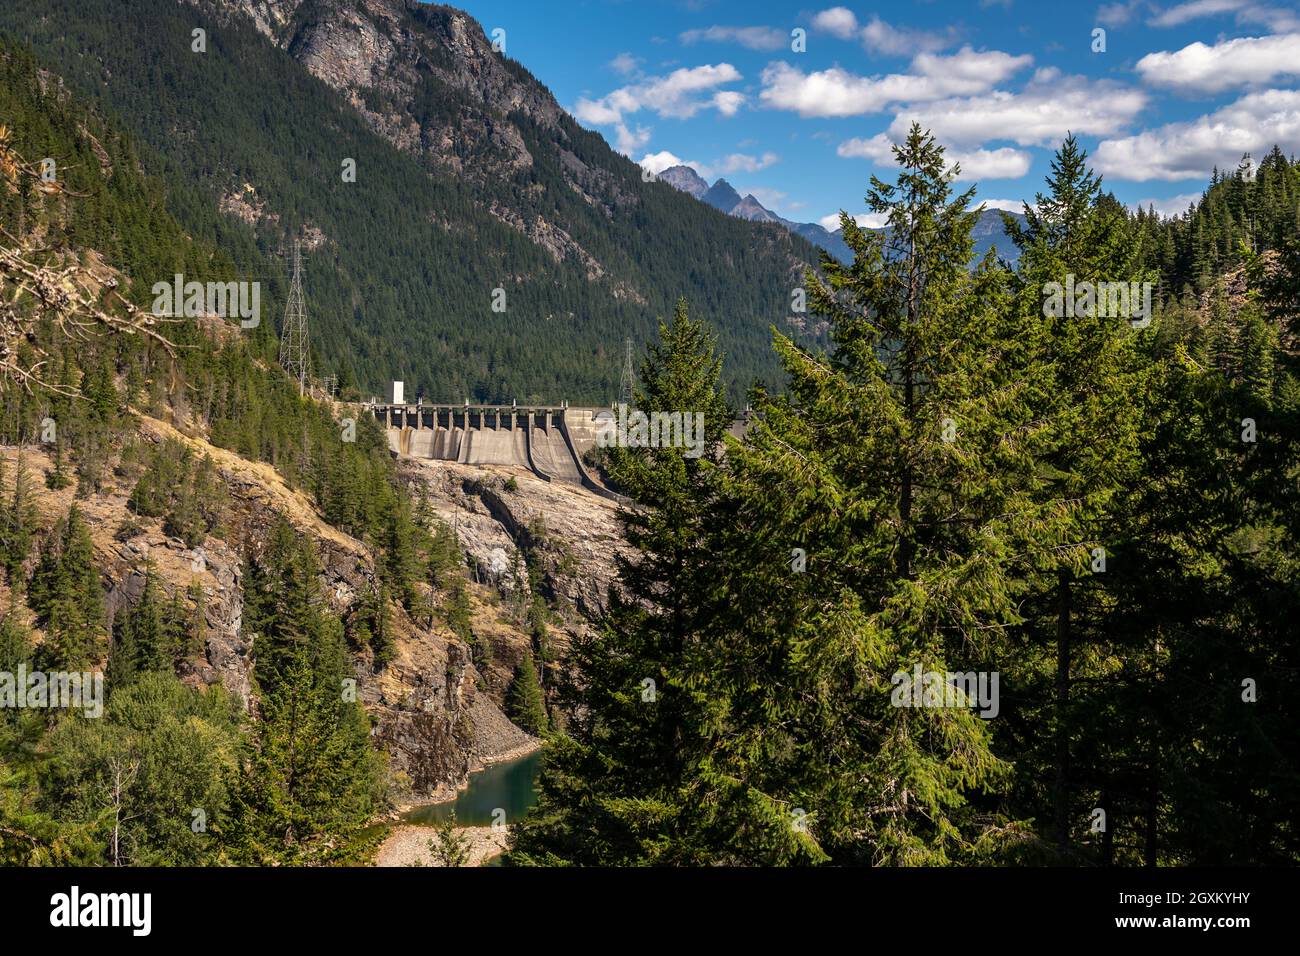 Newwalem, WA États-Unis - 09-02-2021: La Damn de Ross Lake fait partie du projet hydroélectrique gorge pour fournir de l'électricité à Seattle Banque D'Images